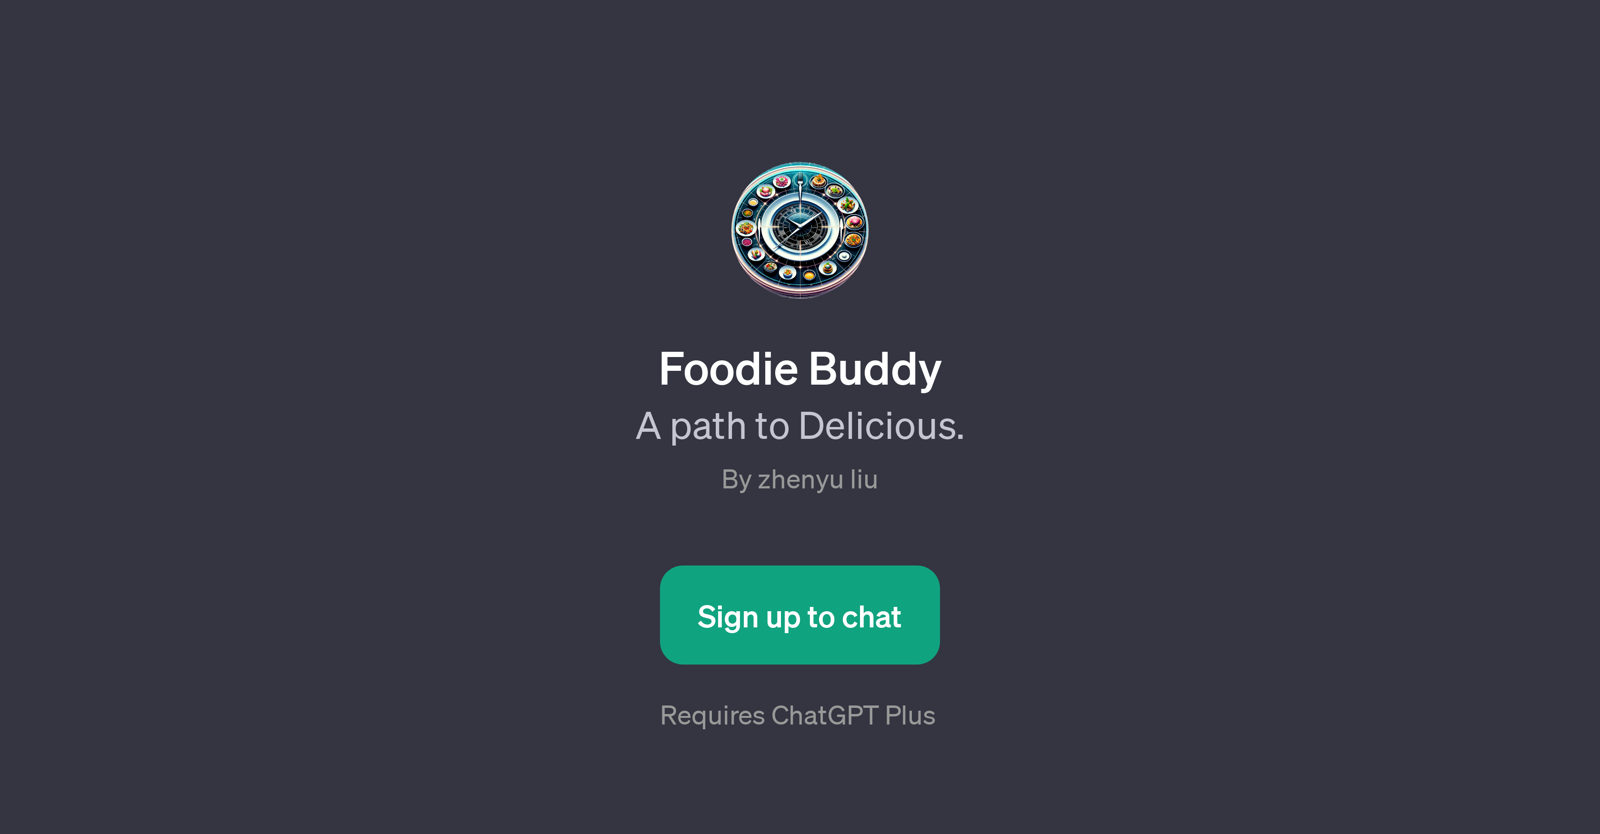 Foodie Buddy website